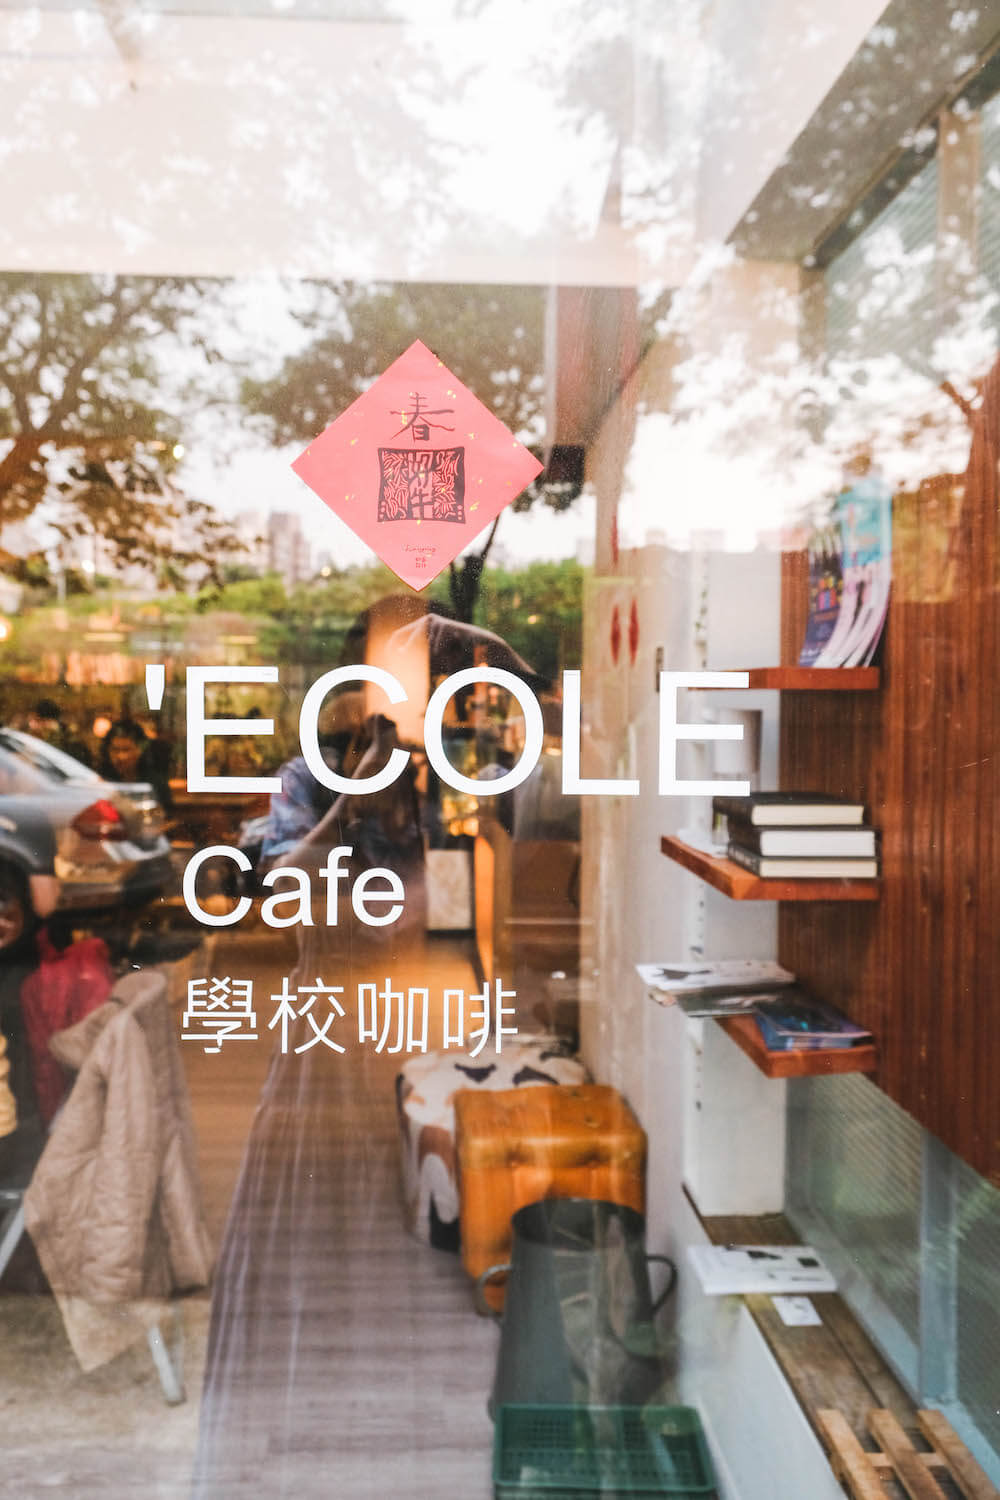 學校咖啡館 Ecole Cafe：青田街巷弄不限時咖啡廳，藝文、手作與咖啡相伴的靜謐空間